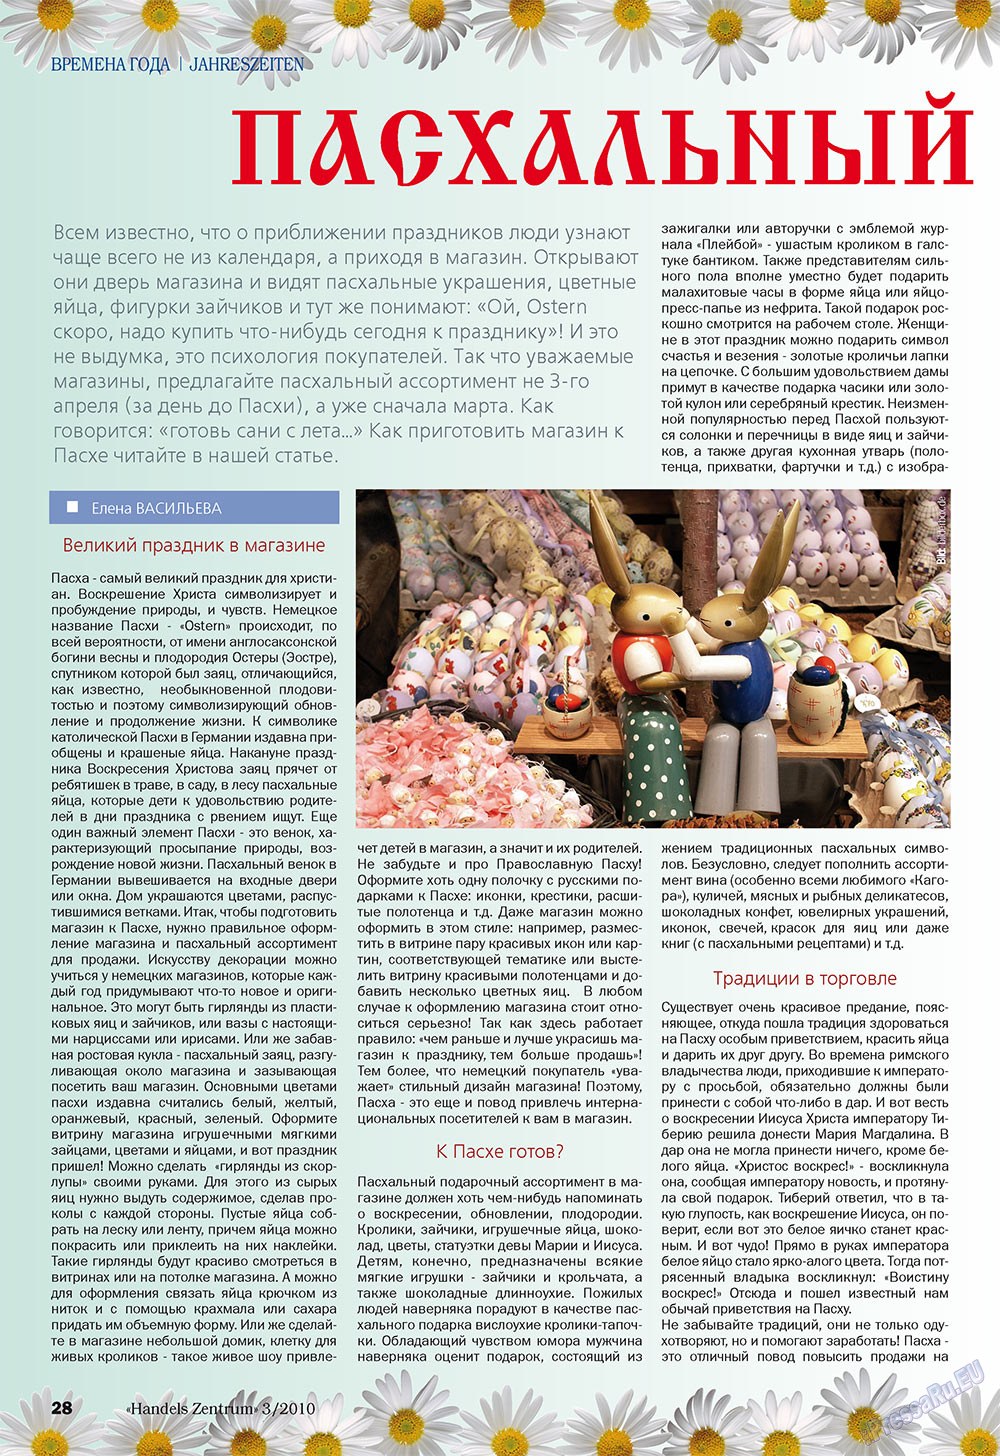 Handels Zentrum (Zeitschrift). 2010 Jahr, Ausgabe 3, Seite 28